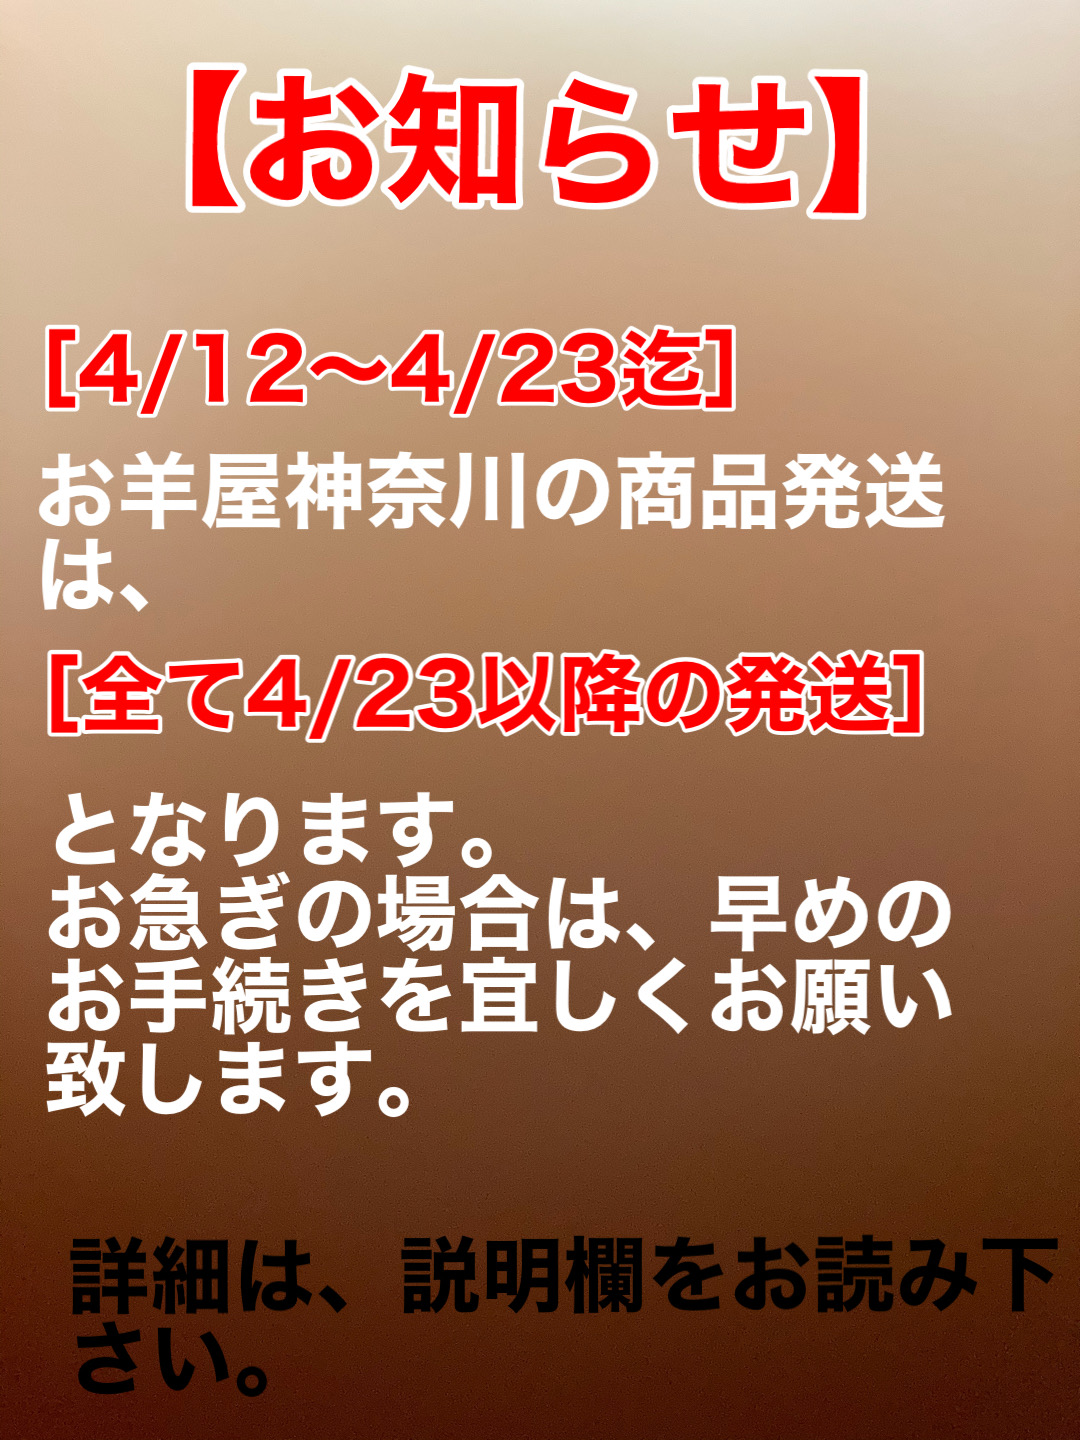 【重要/発送について】4/12〜4/23まで神奈川からの商品発送遅れます